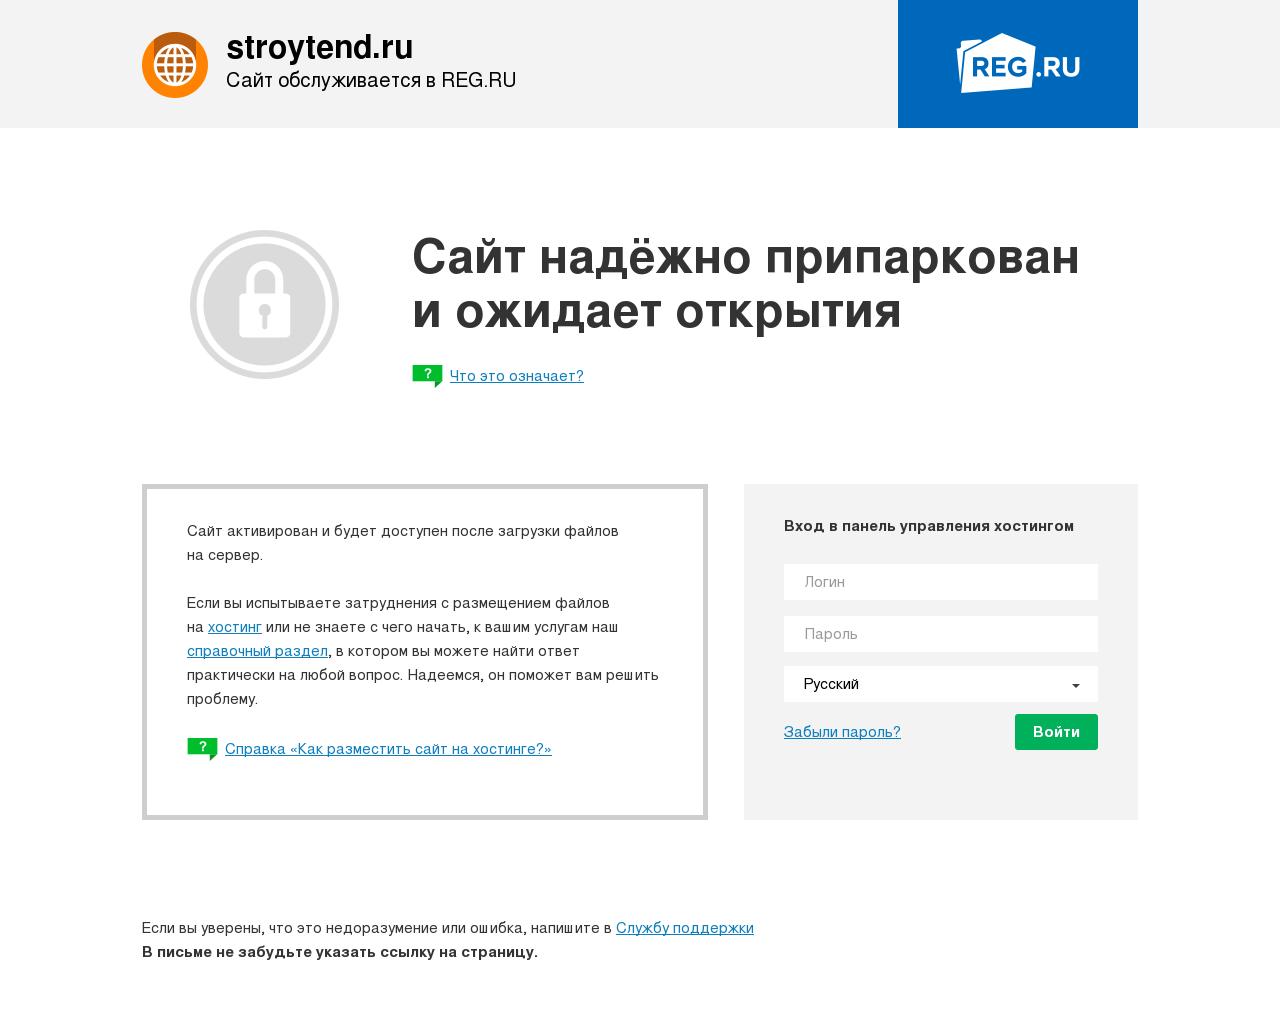 Изображение сайта stroytend.ru в разрешении 1280x1024